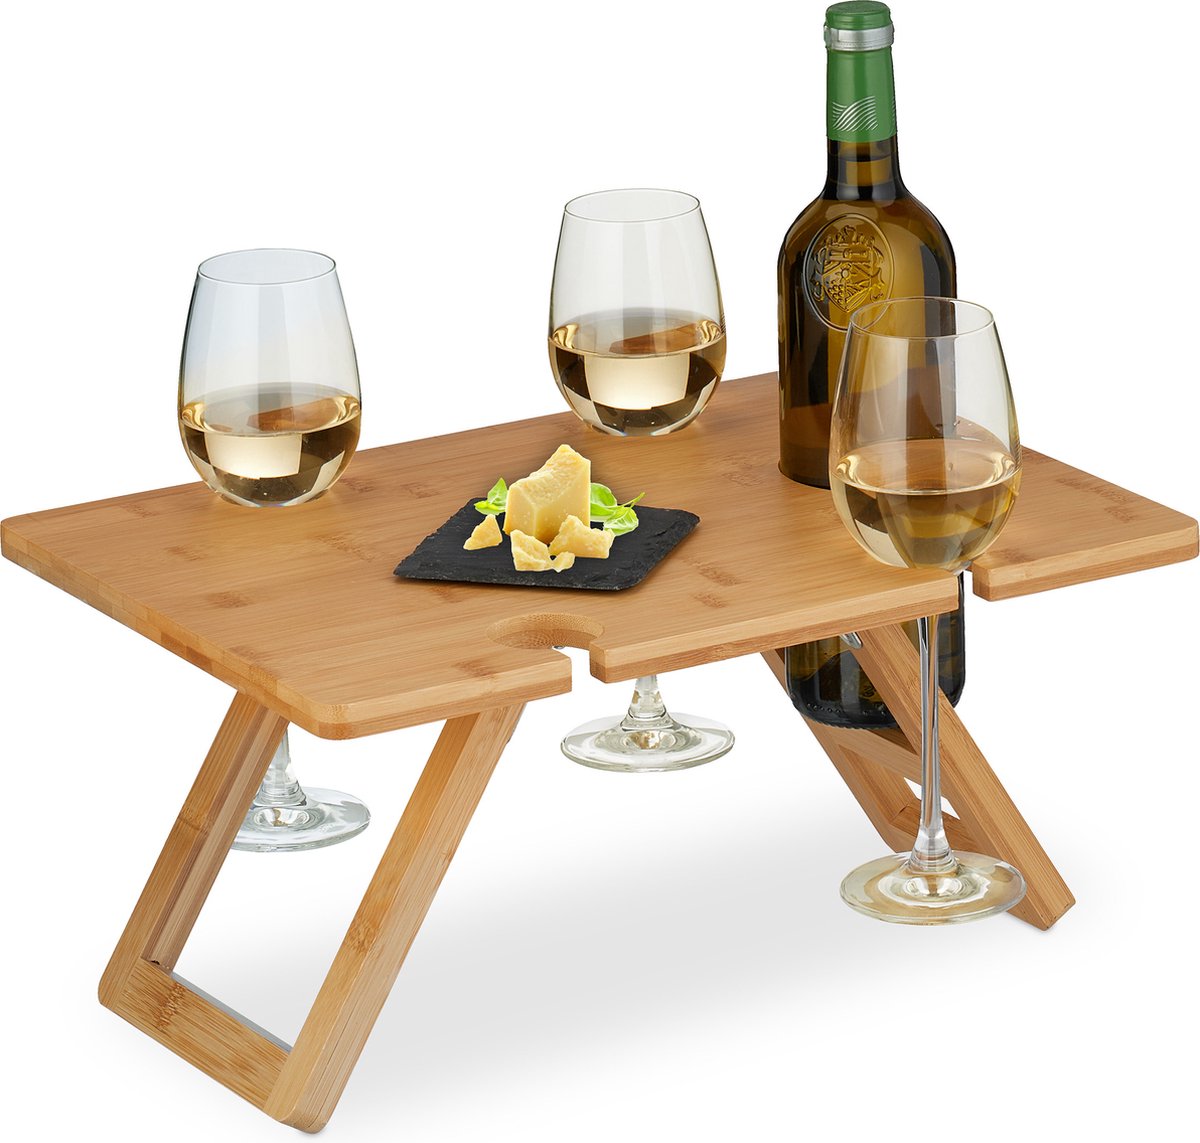 Relaxdays opvouwbare picknick wijntafel - 4 wijnglazenhouders - bamboe dienbladtafel klein